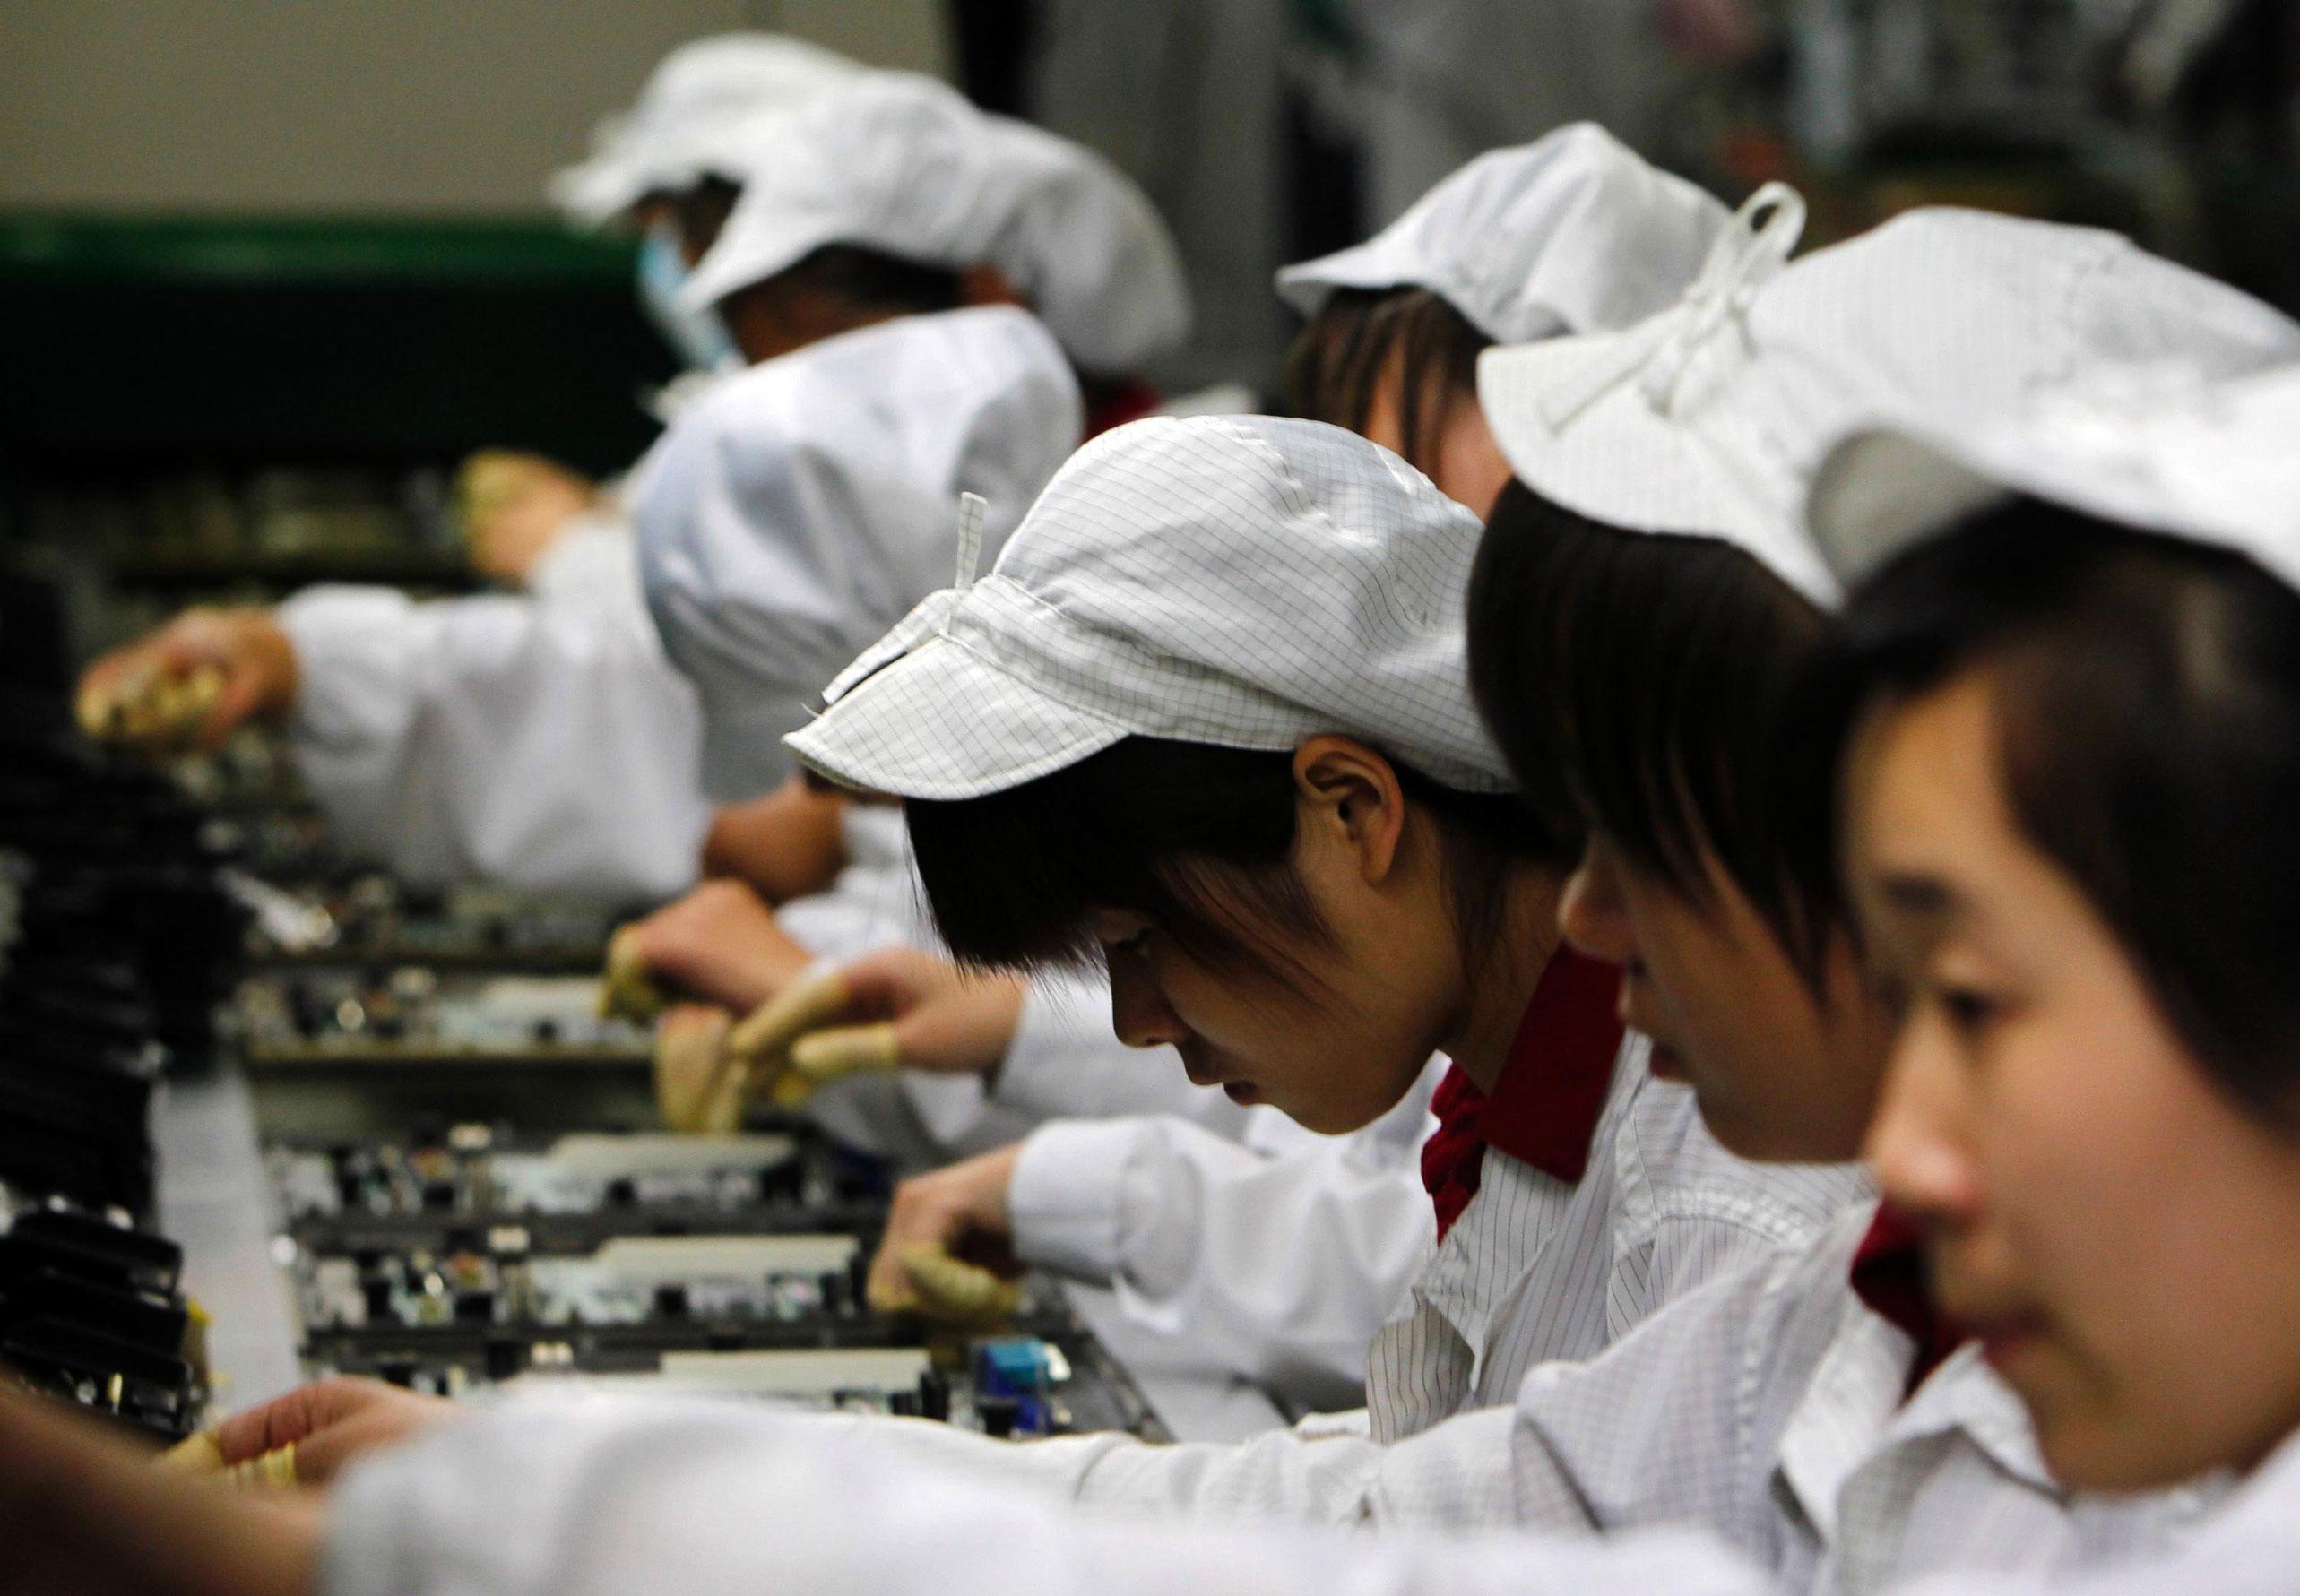 Kinesiske arbejdere samler computere på en fabrik i Shenzhen, hvor flere underleverandører til mærker som Dell og Apple har til huse. Arbejdsforholdene på de kinesiske elektronikfabrikker
kom senest i fokus efter en stribe selvmord blandt arbejdere hos Foxconn Electronics, en af branchens største underleverandører. Foto: Polfoto